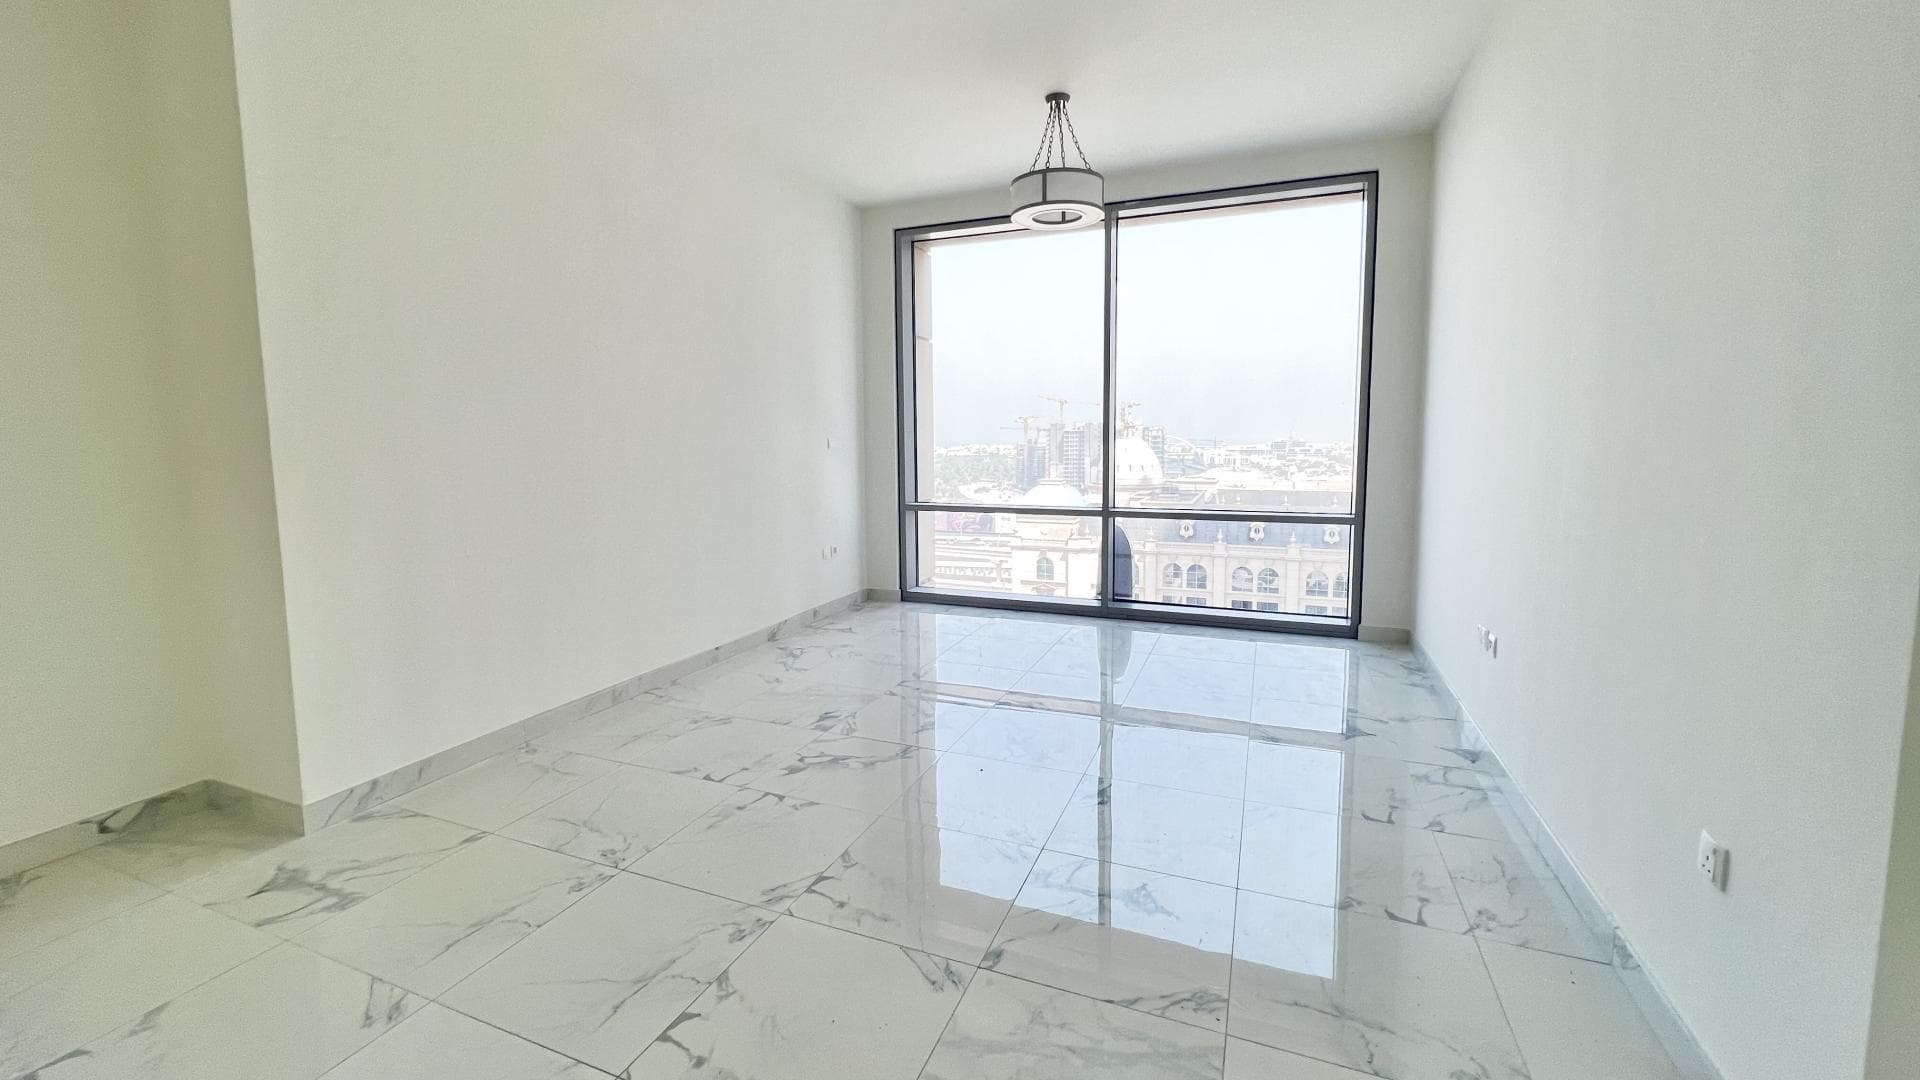 2 Bedroom Apartment For Rent Al Thamam 19 Lp35769 190a4c289fc4b700.jpg